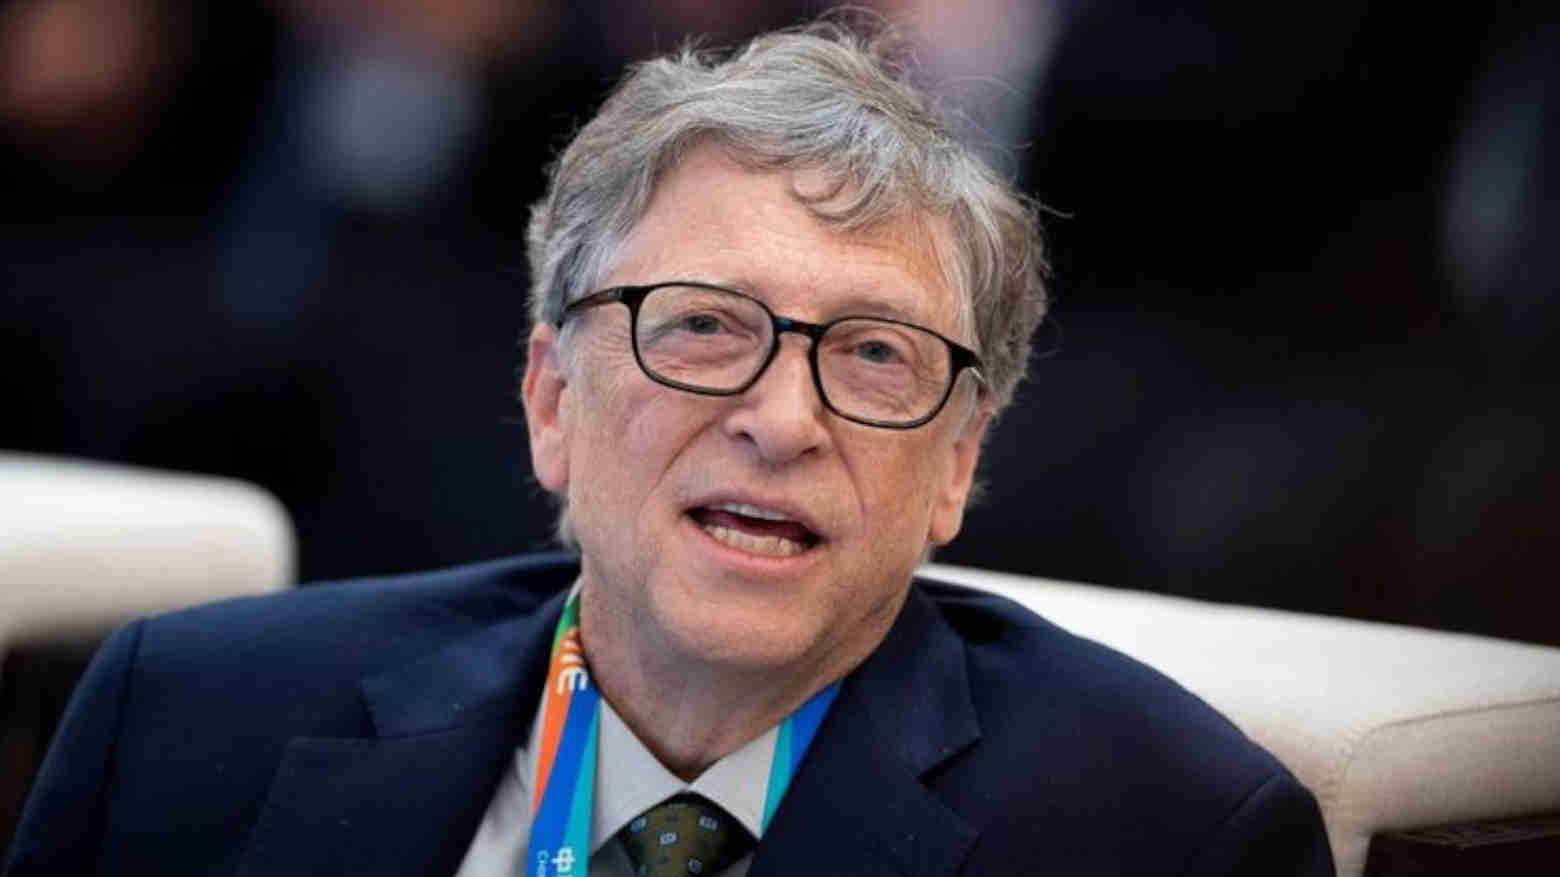 Waduh! Bill Gates Selingkuh dengan Seorang Karyawan, Microsoft Didesak Selidiki